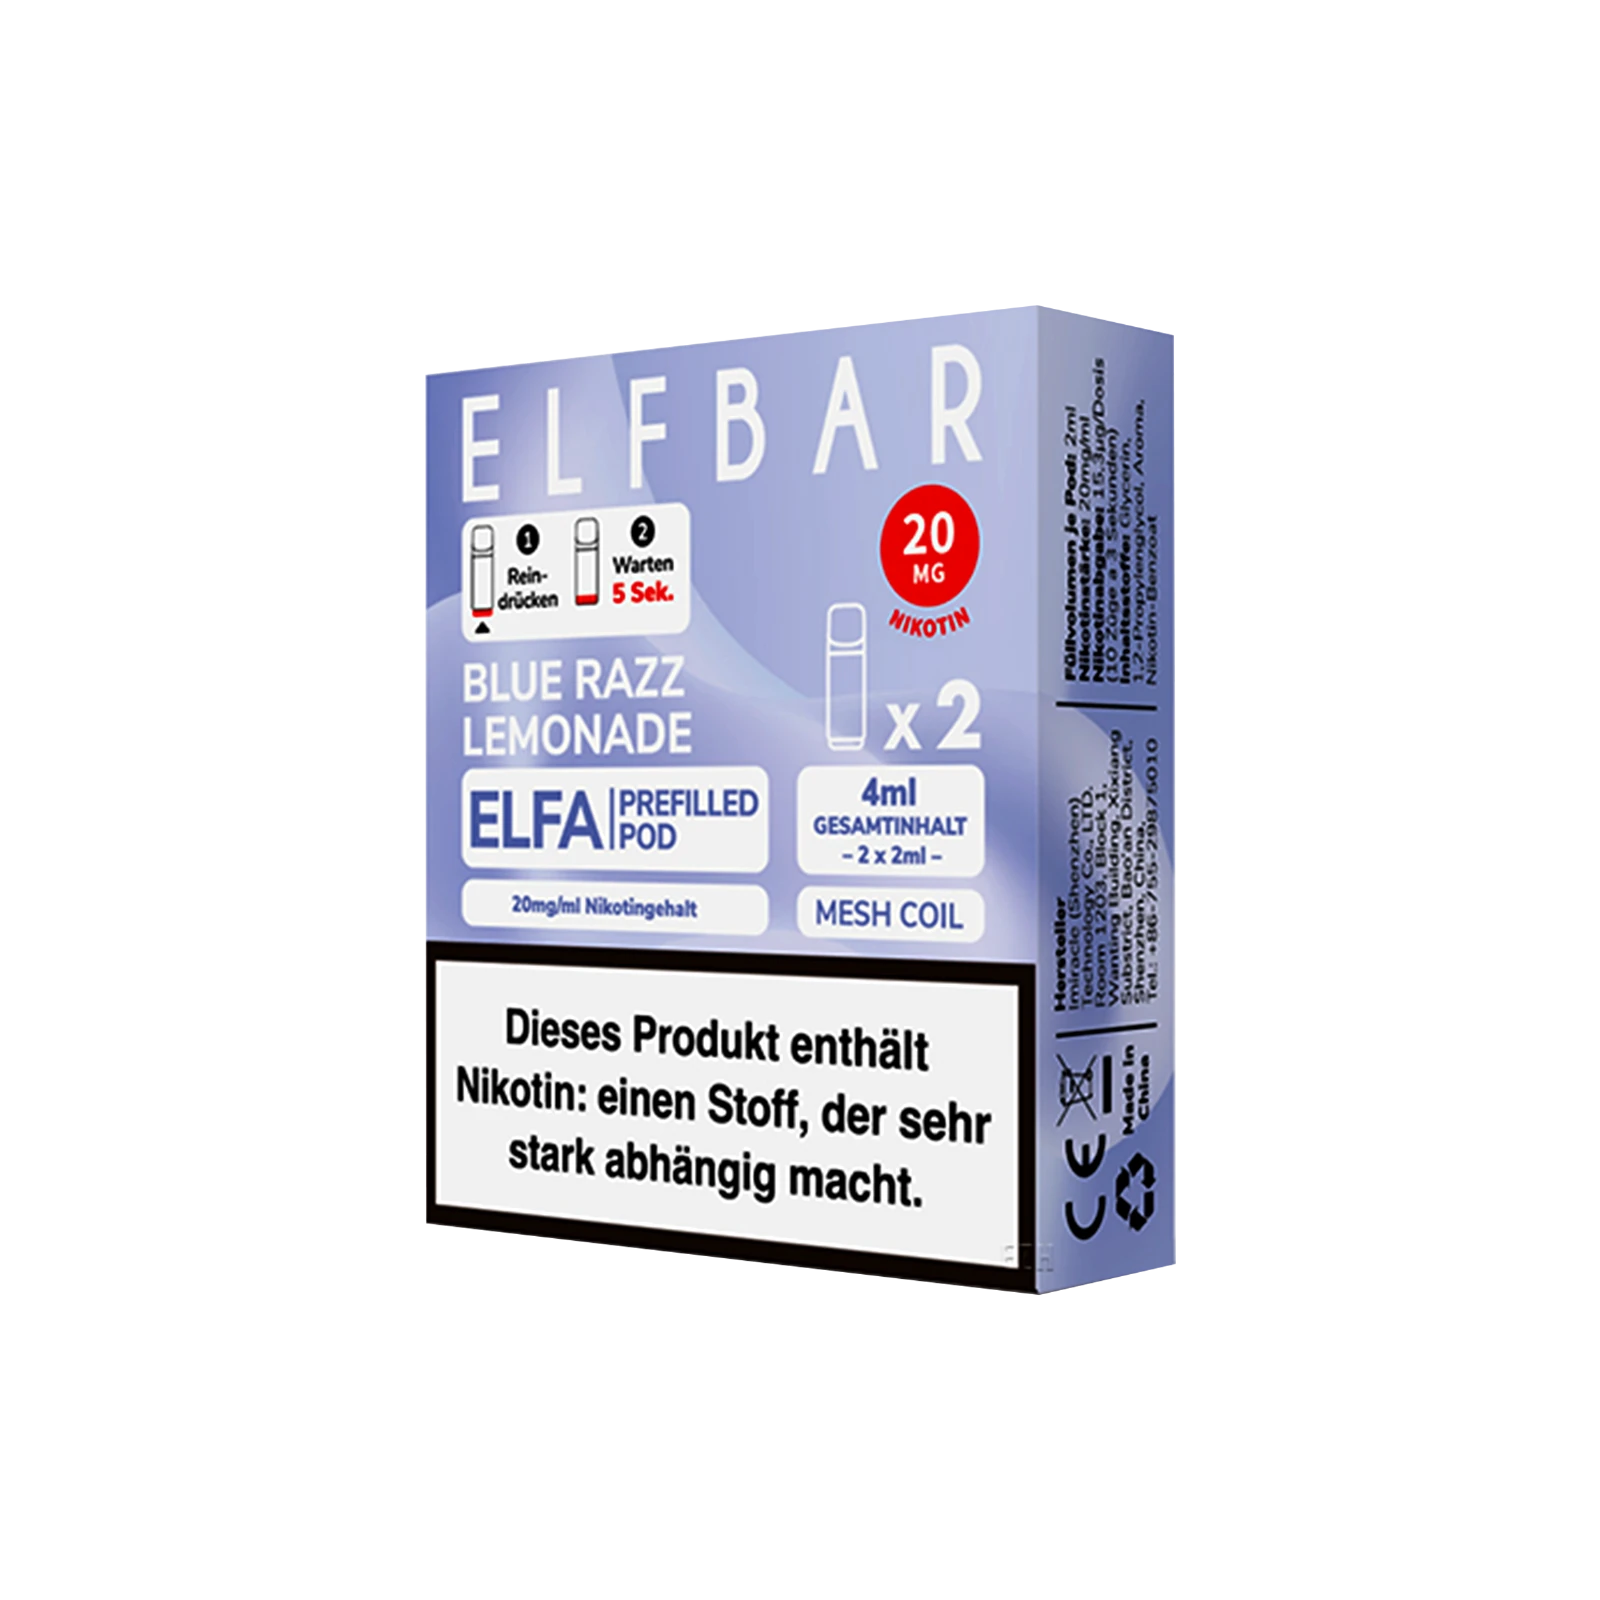 Elf Bar ELFA CP Prefilled Pod Blue Razz Lemonade | Neue Liquid Sorten